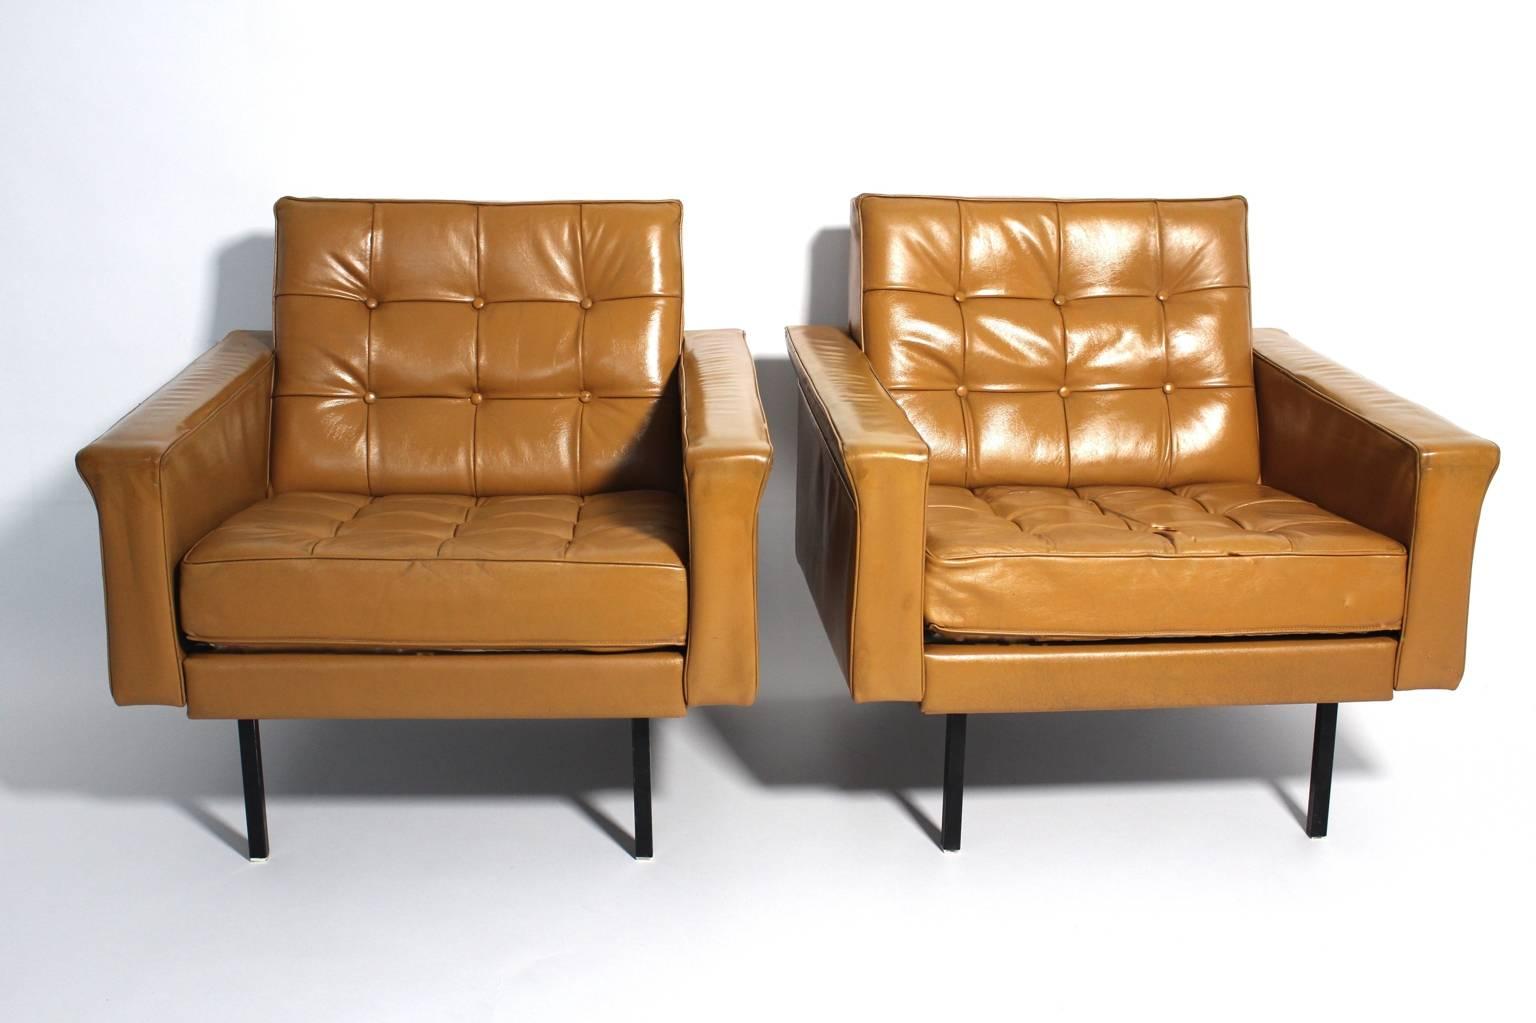 Modernes Paar brauner Vintage-Ledersessel von Johannes Spalt, Wien, 1959 und ausgeführt von Franz Wittmann, Österreich. Johannes Spalt entwarf viele Designs für Wittmann.
Diese Sessel sind mit dem originalen hellbraunen Leder bezogen und haben vier